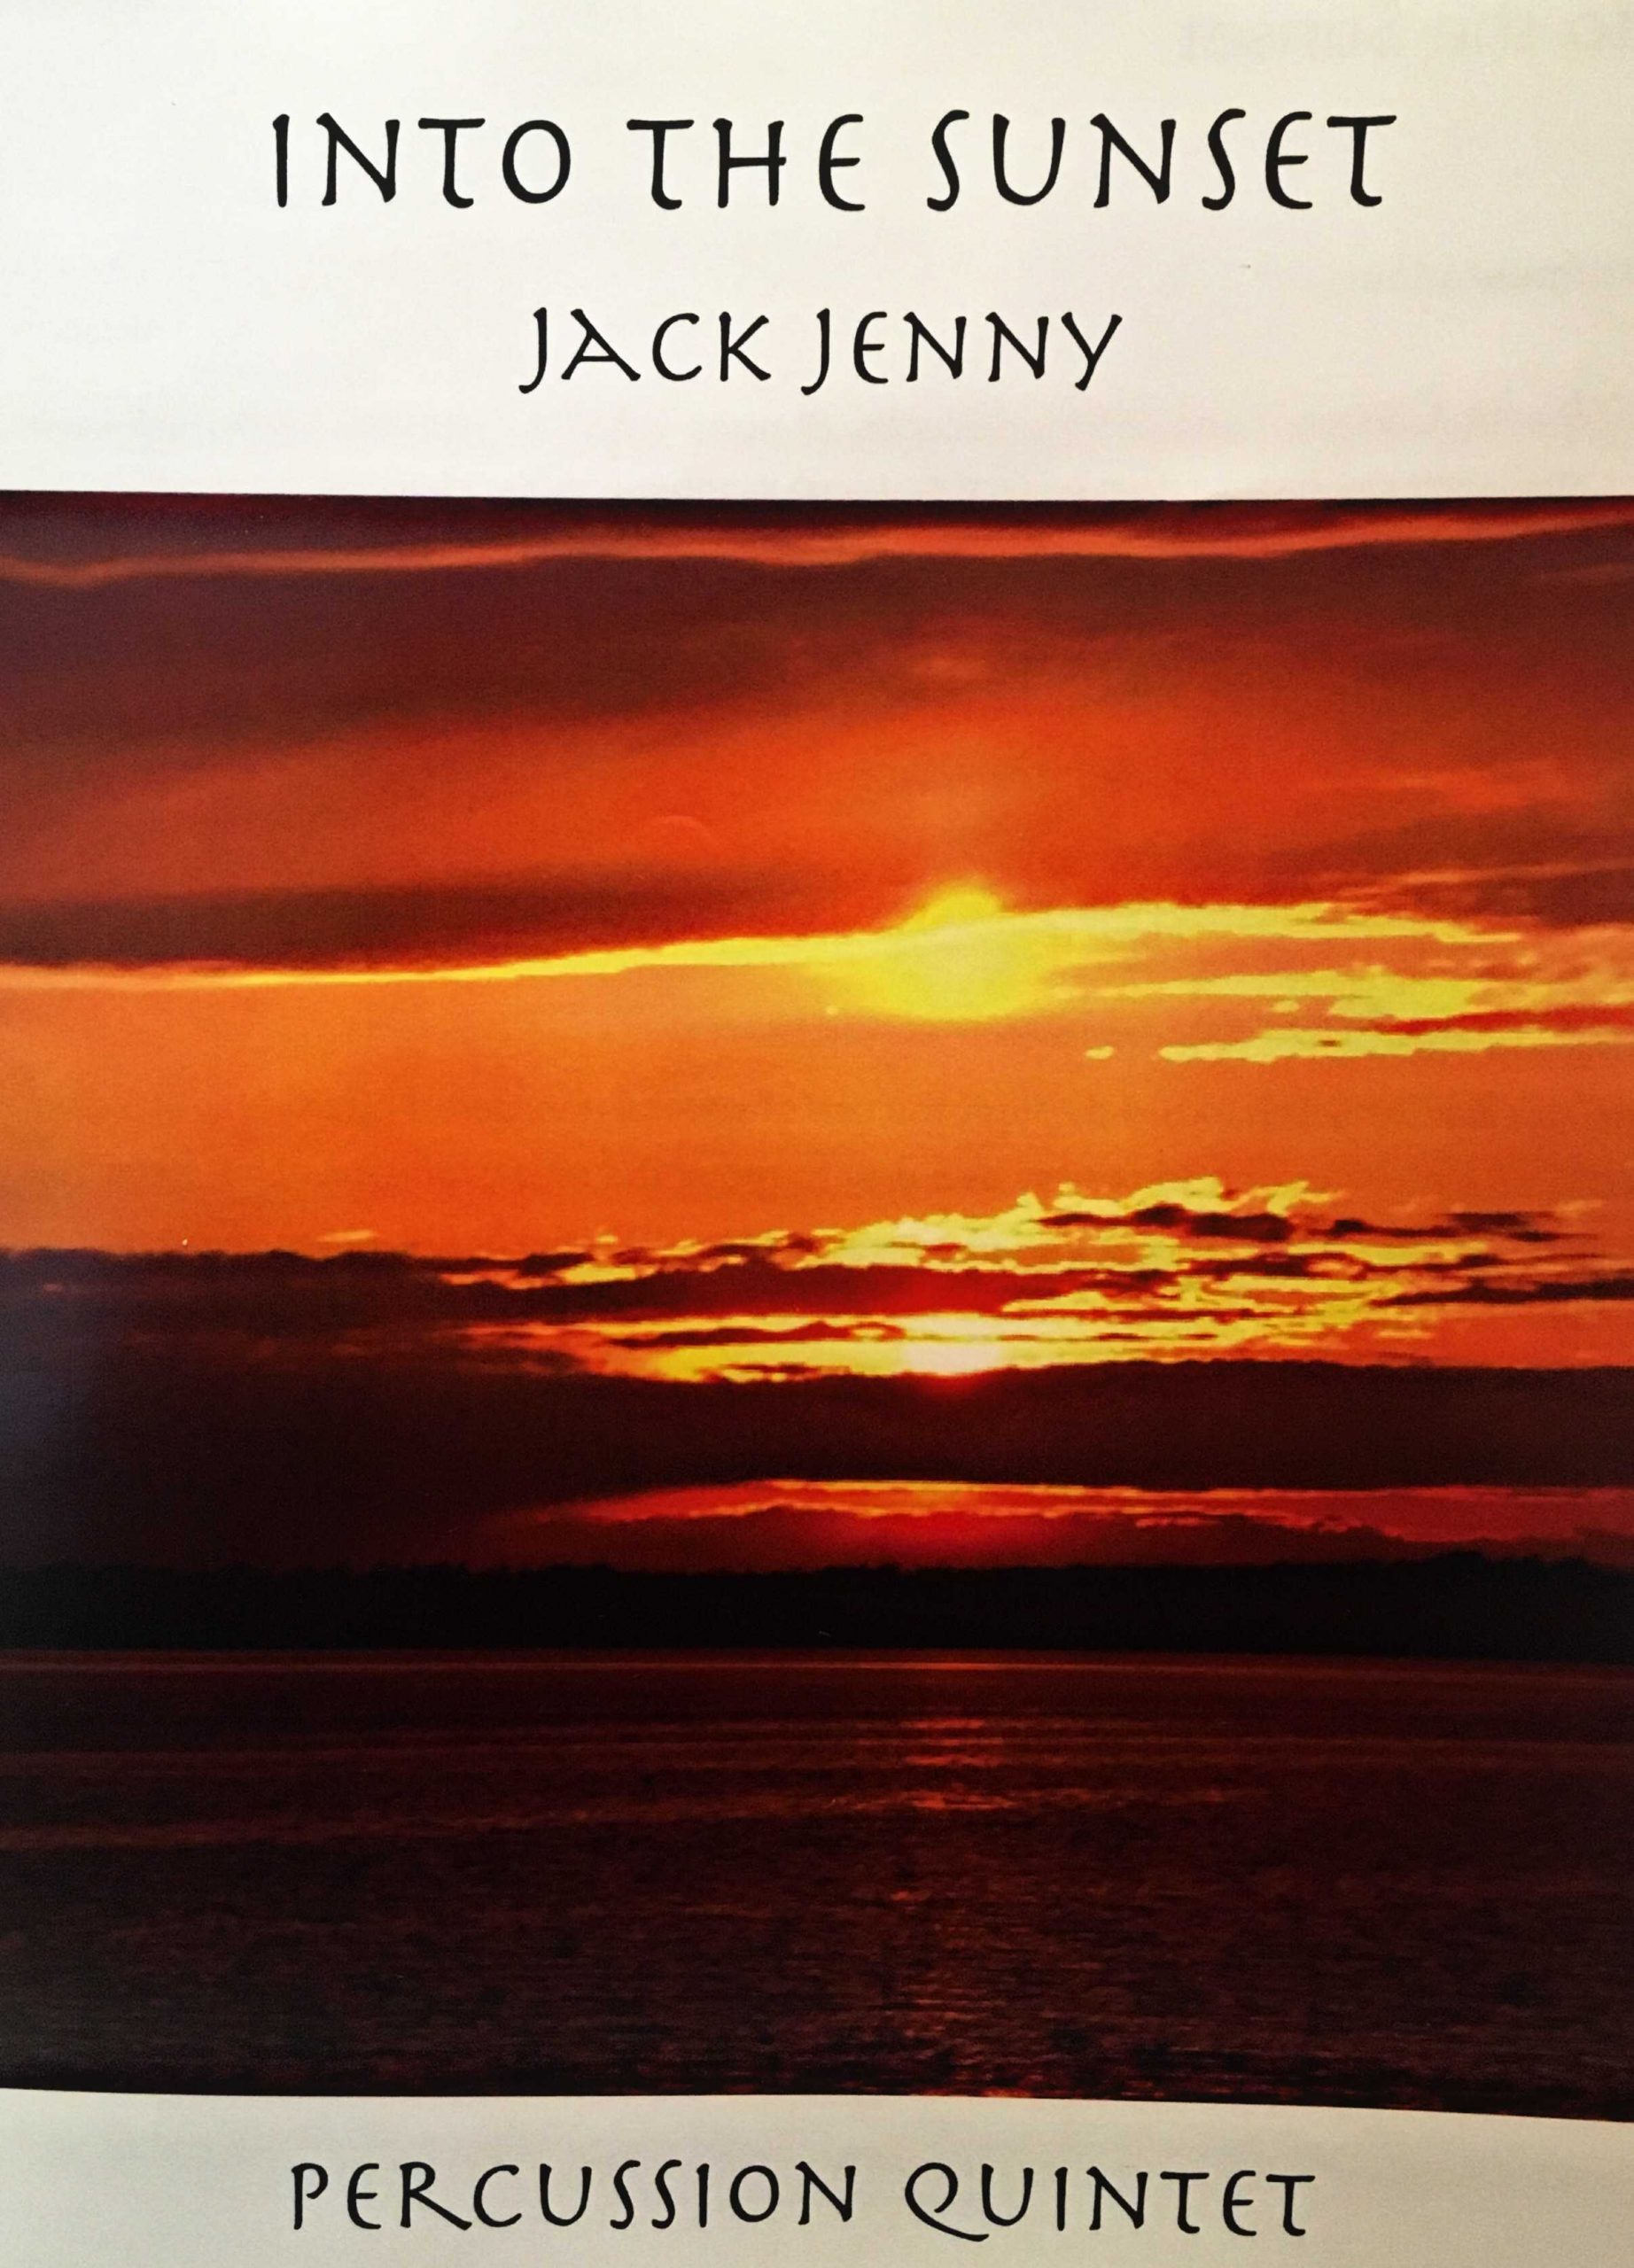 Into the Sunset by Jack Jenny